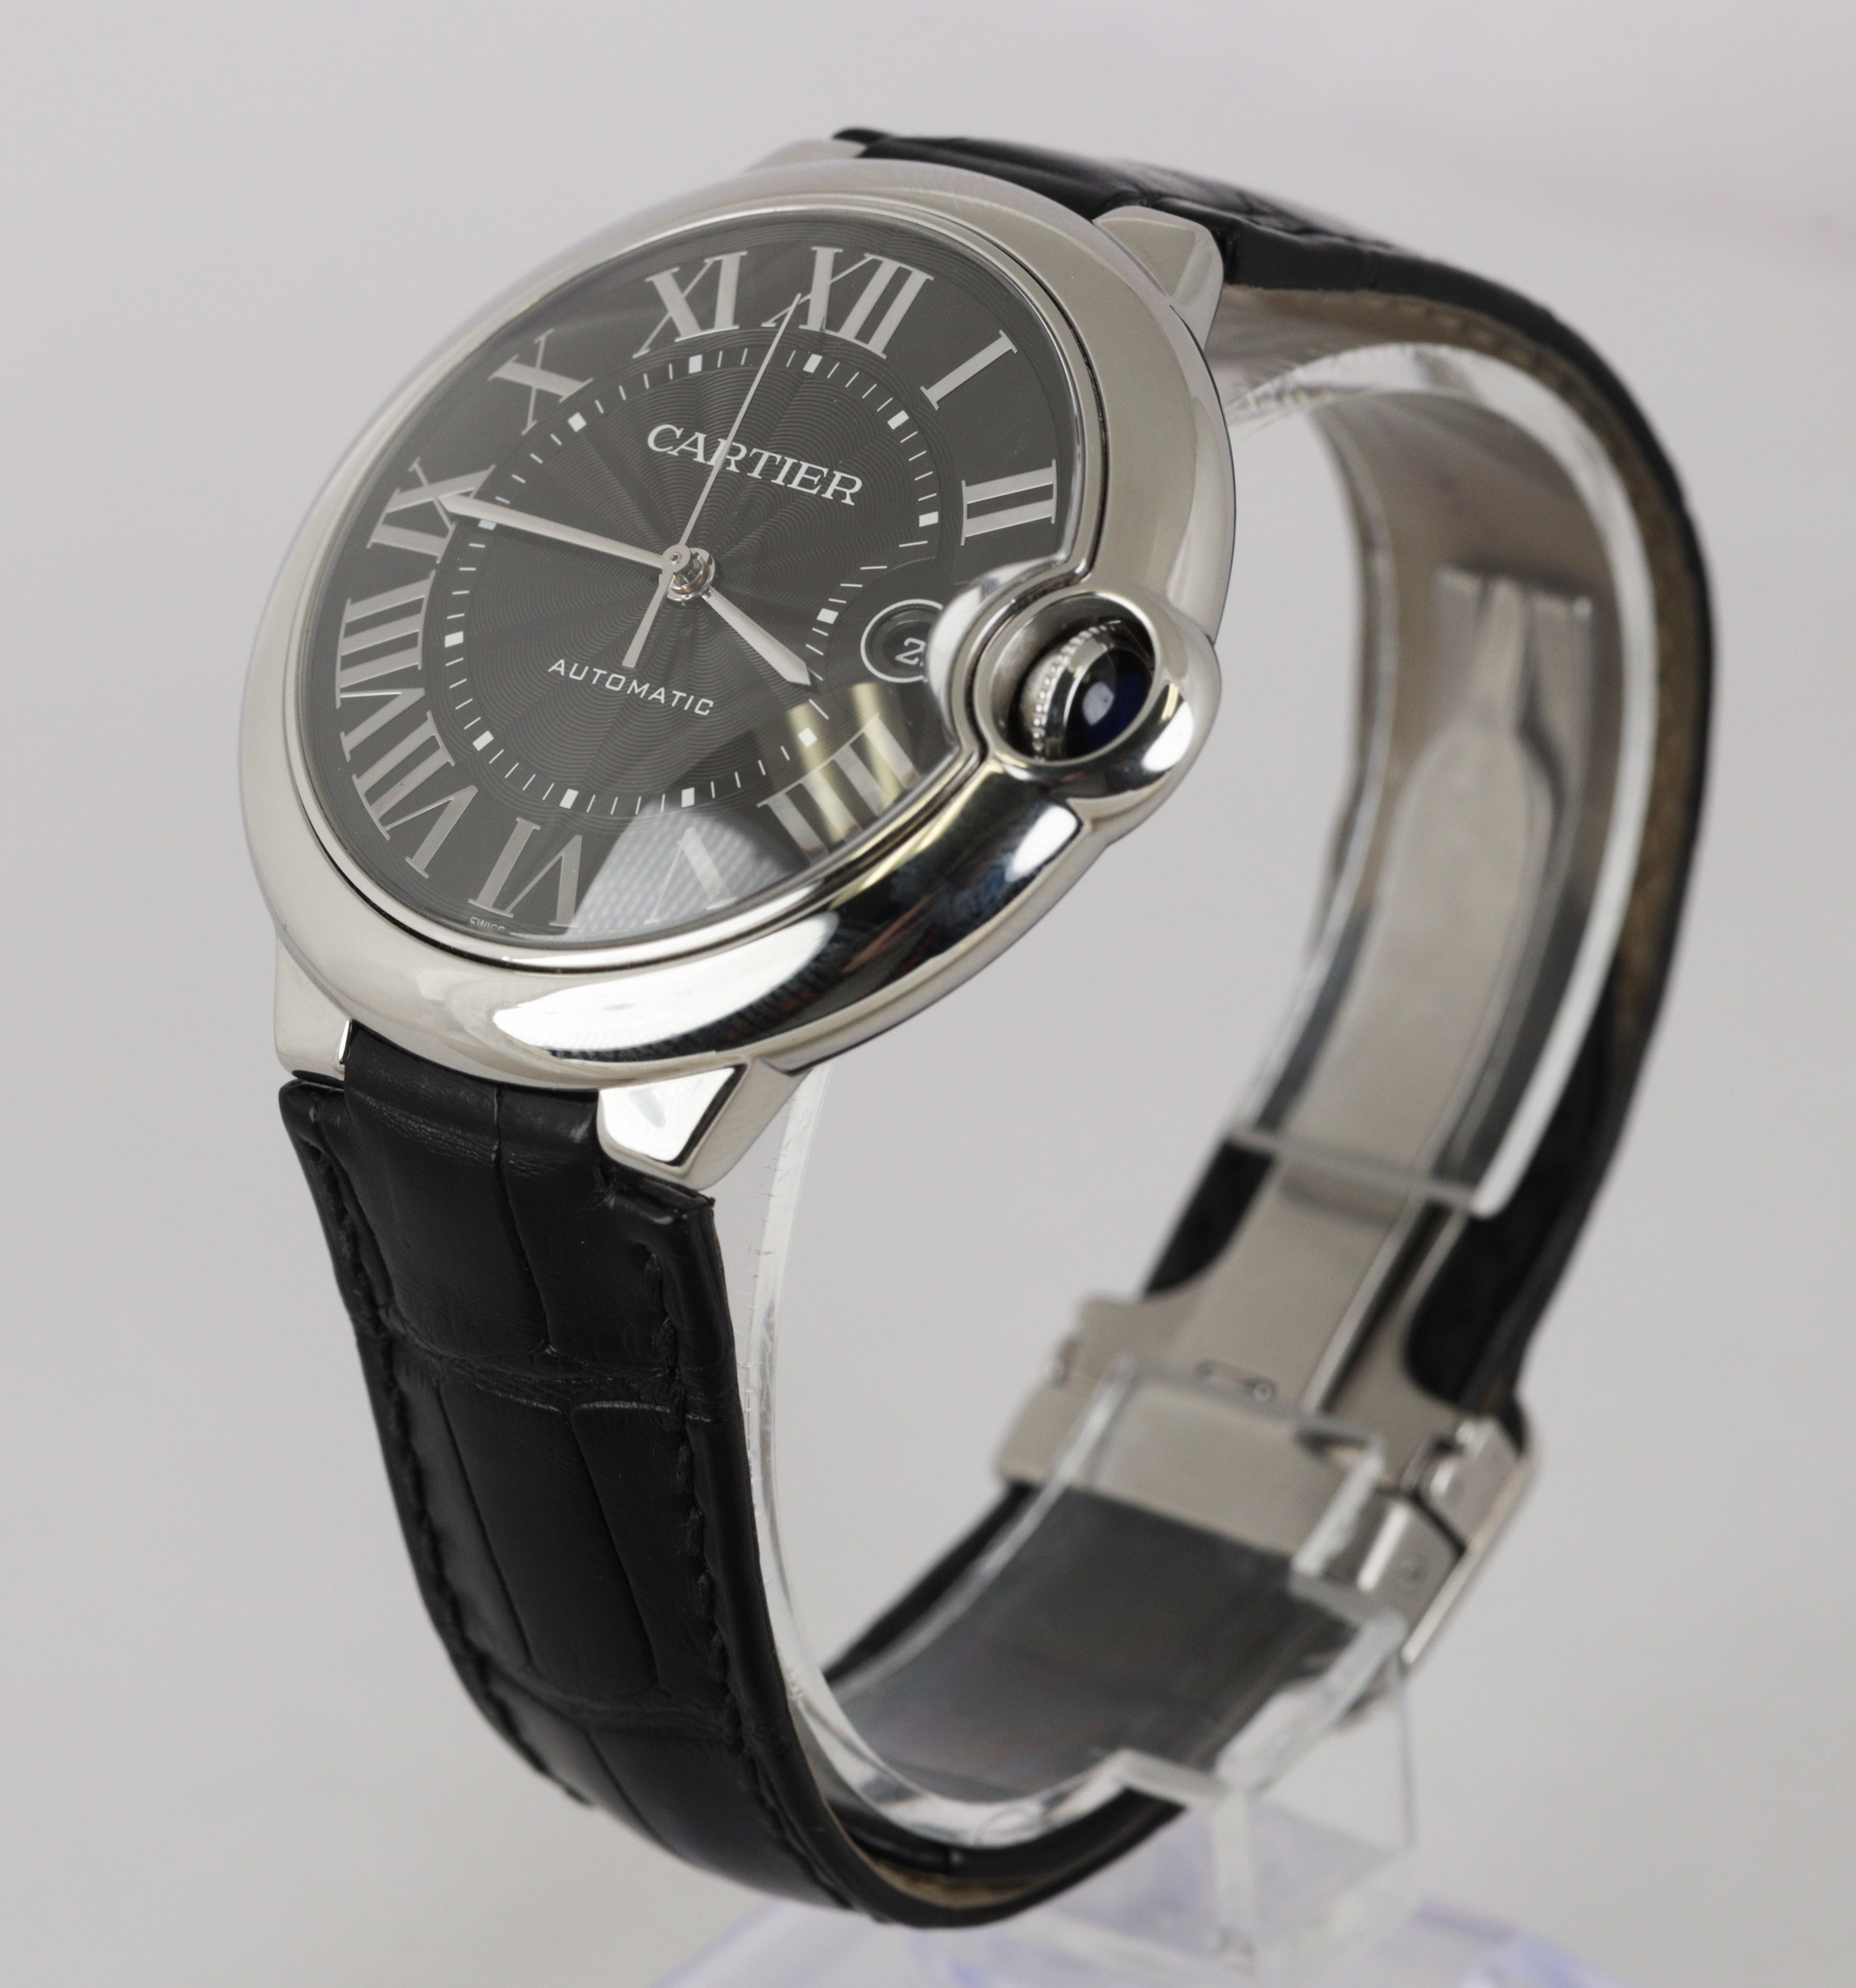 MINT Cartier Ballon Bleu 42mm Stainless Black Automatic Watch 3765 WSBB0003